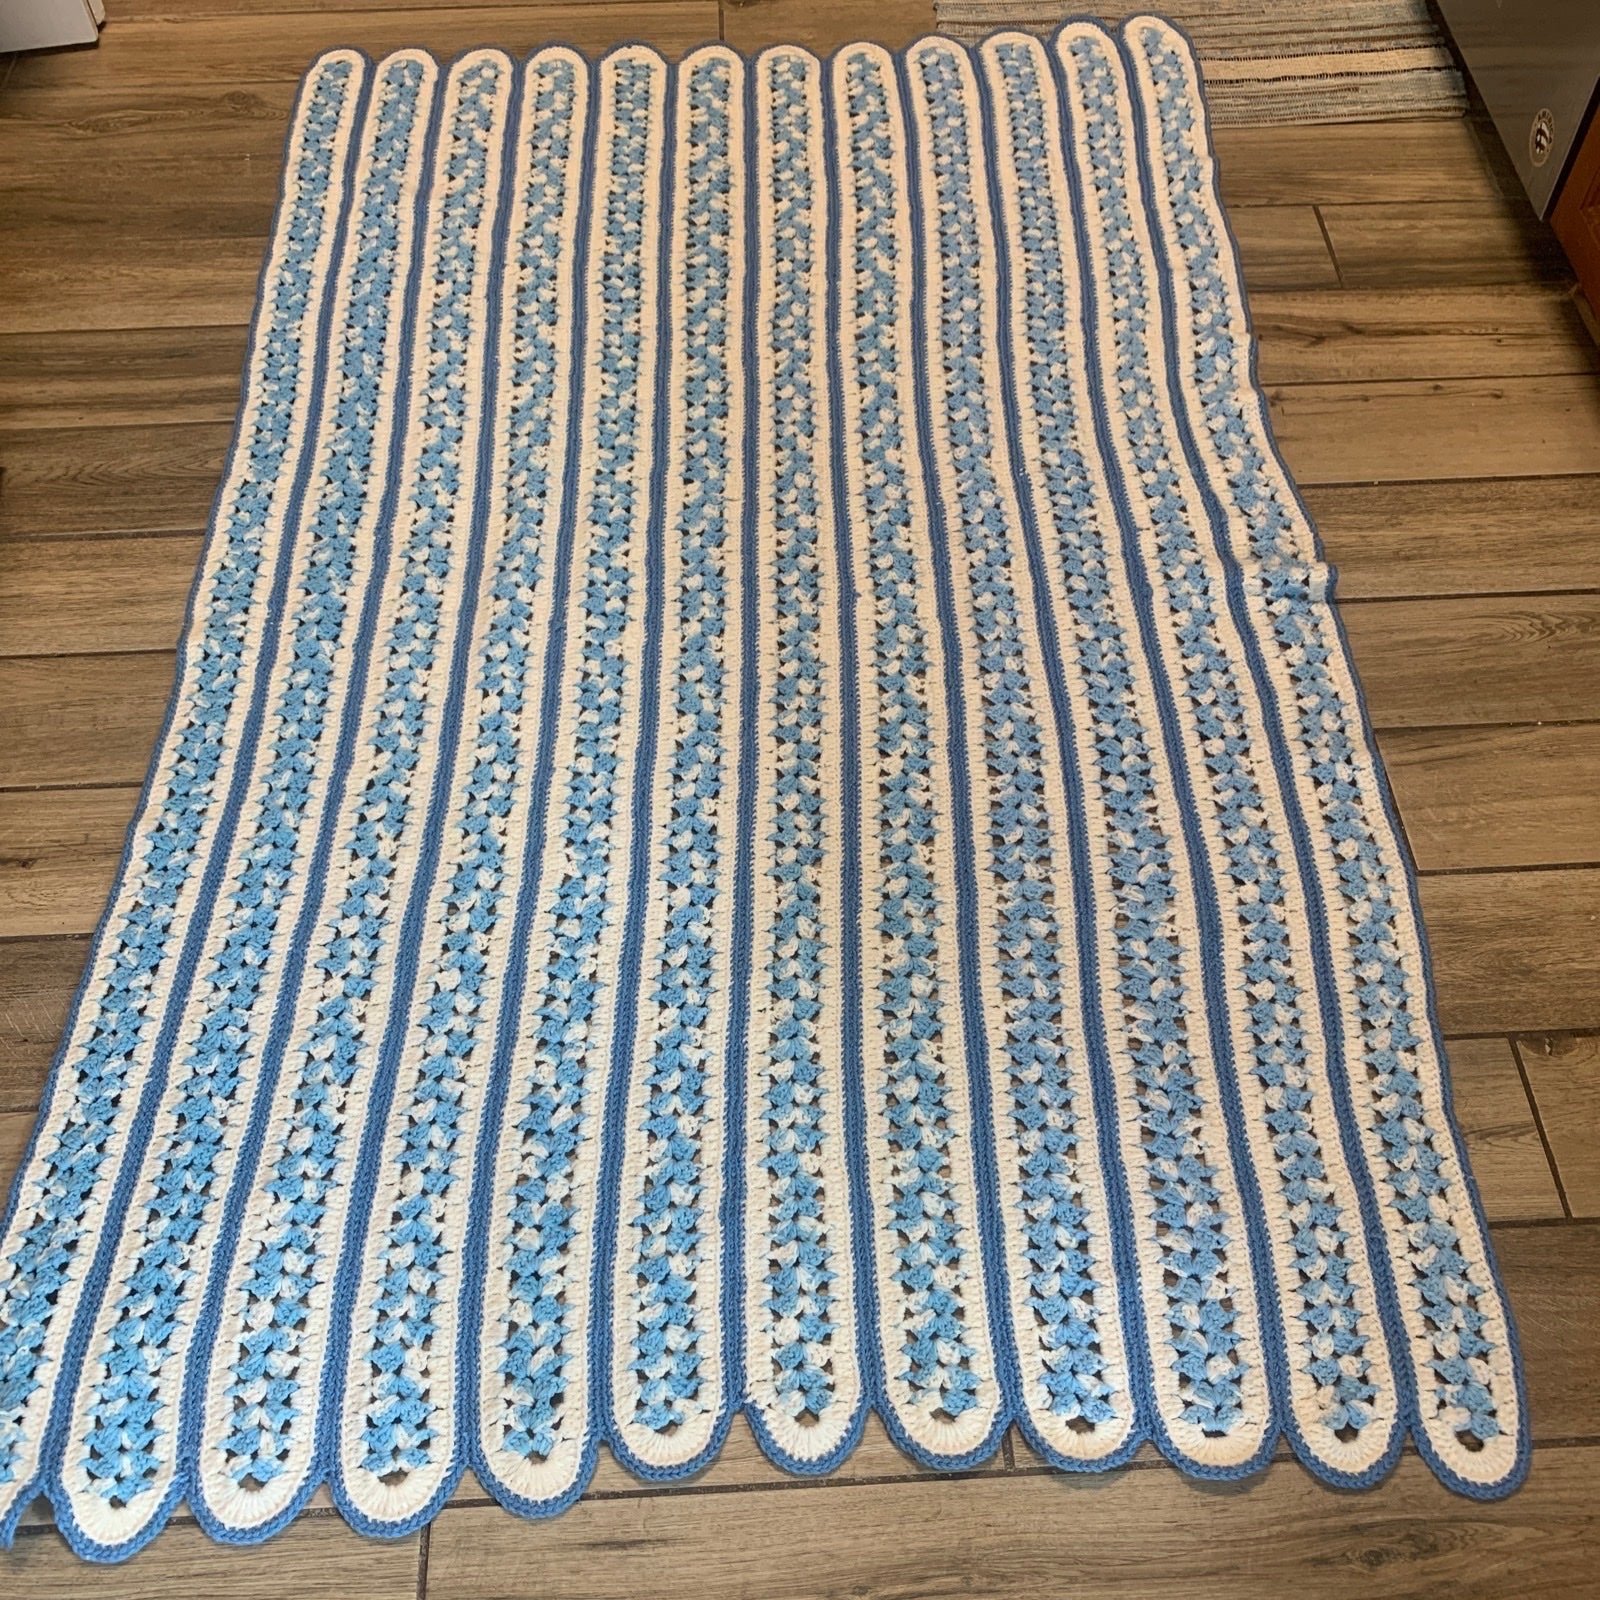 Hand Crocheted blanket throw72 x 50. Scalloped edge blues white vtg m3PKmFE7j